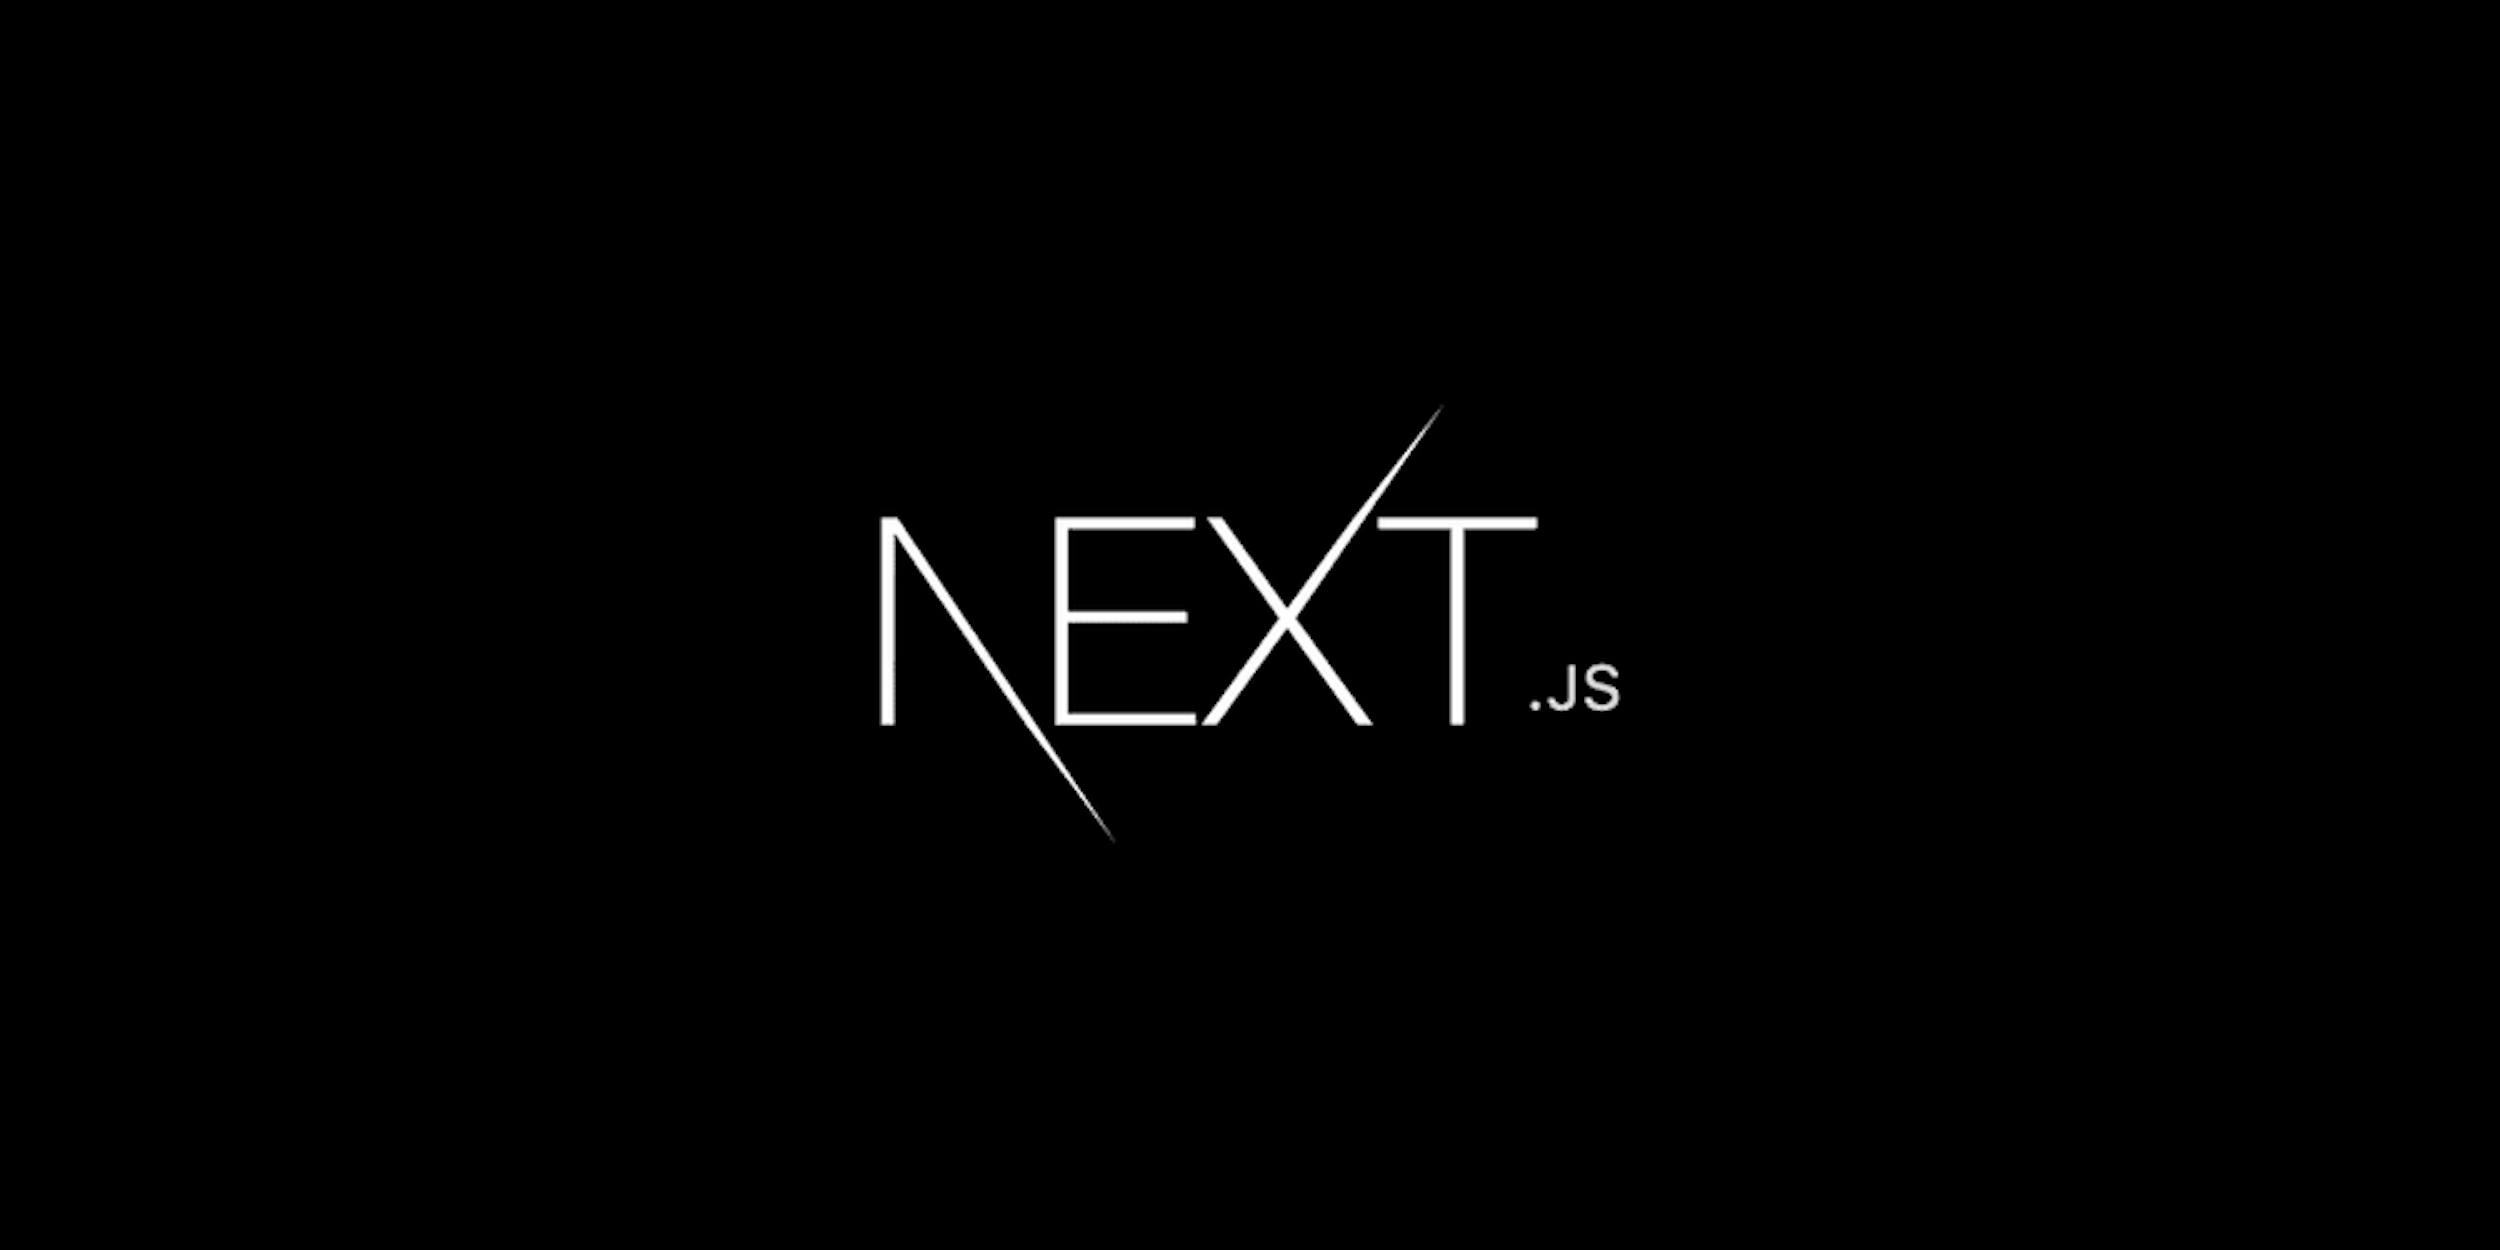 Next reply. Next js. Next.js лого. Надпись next. React next js.